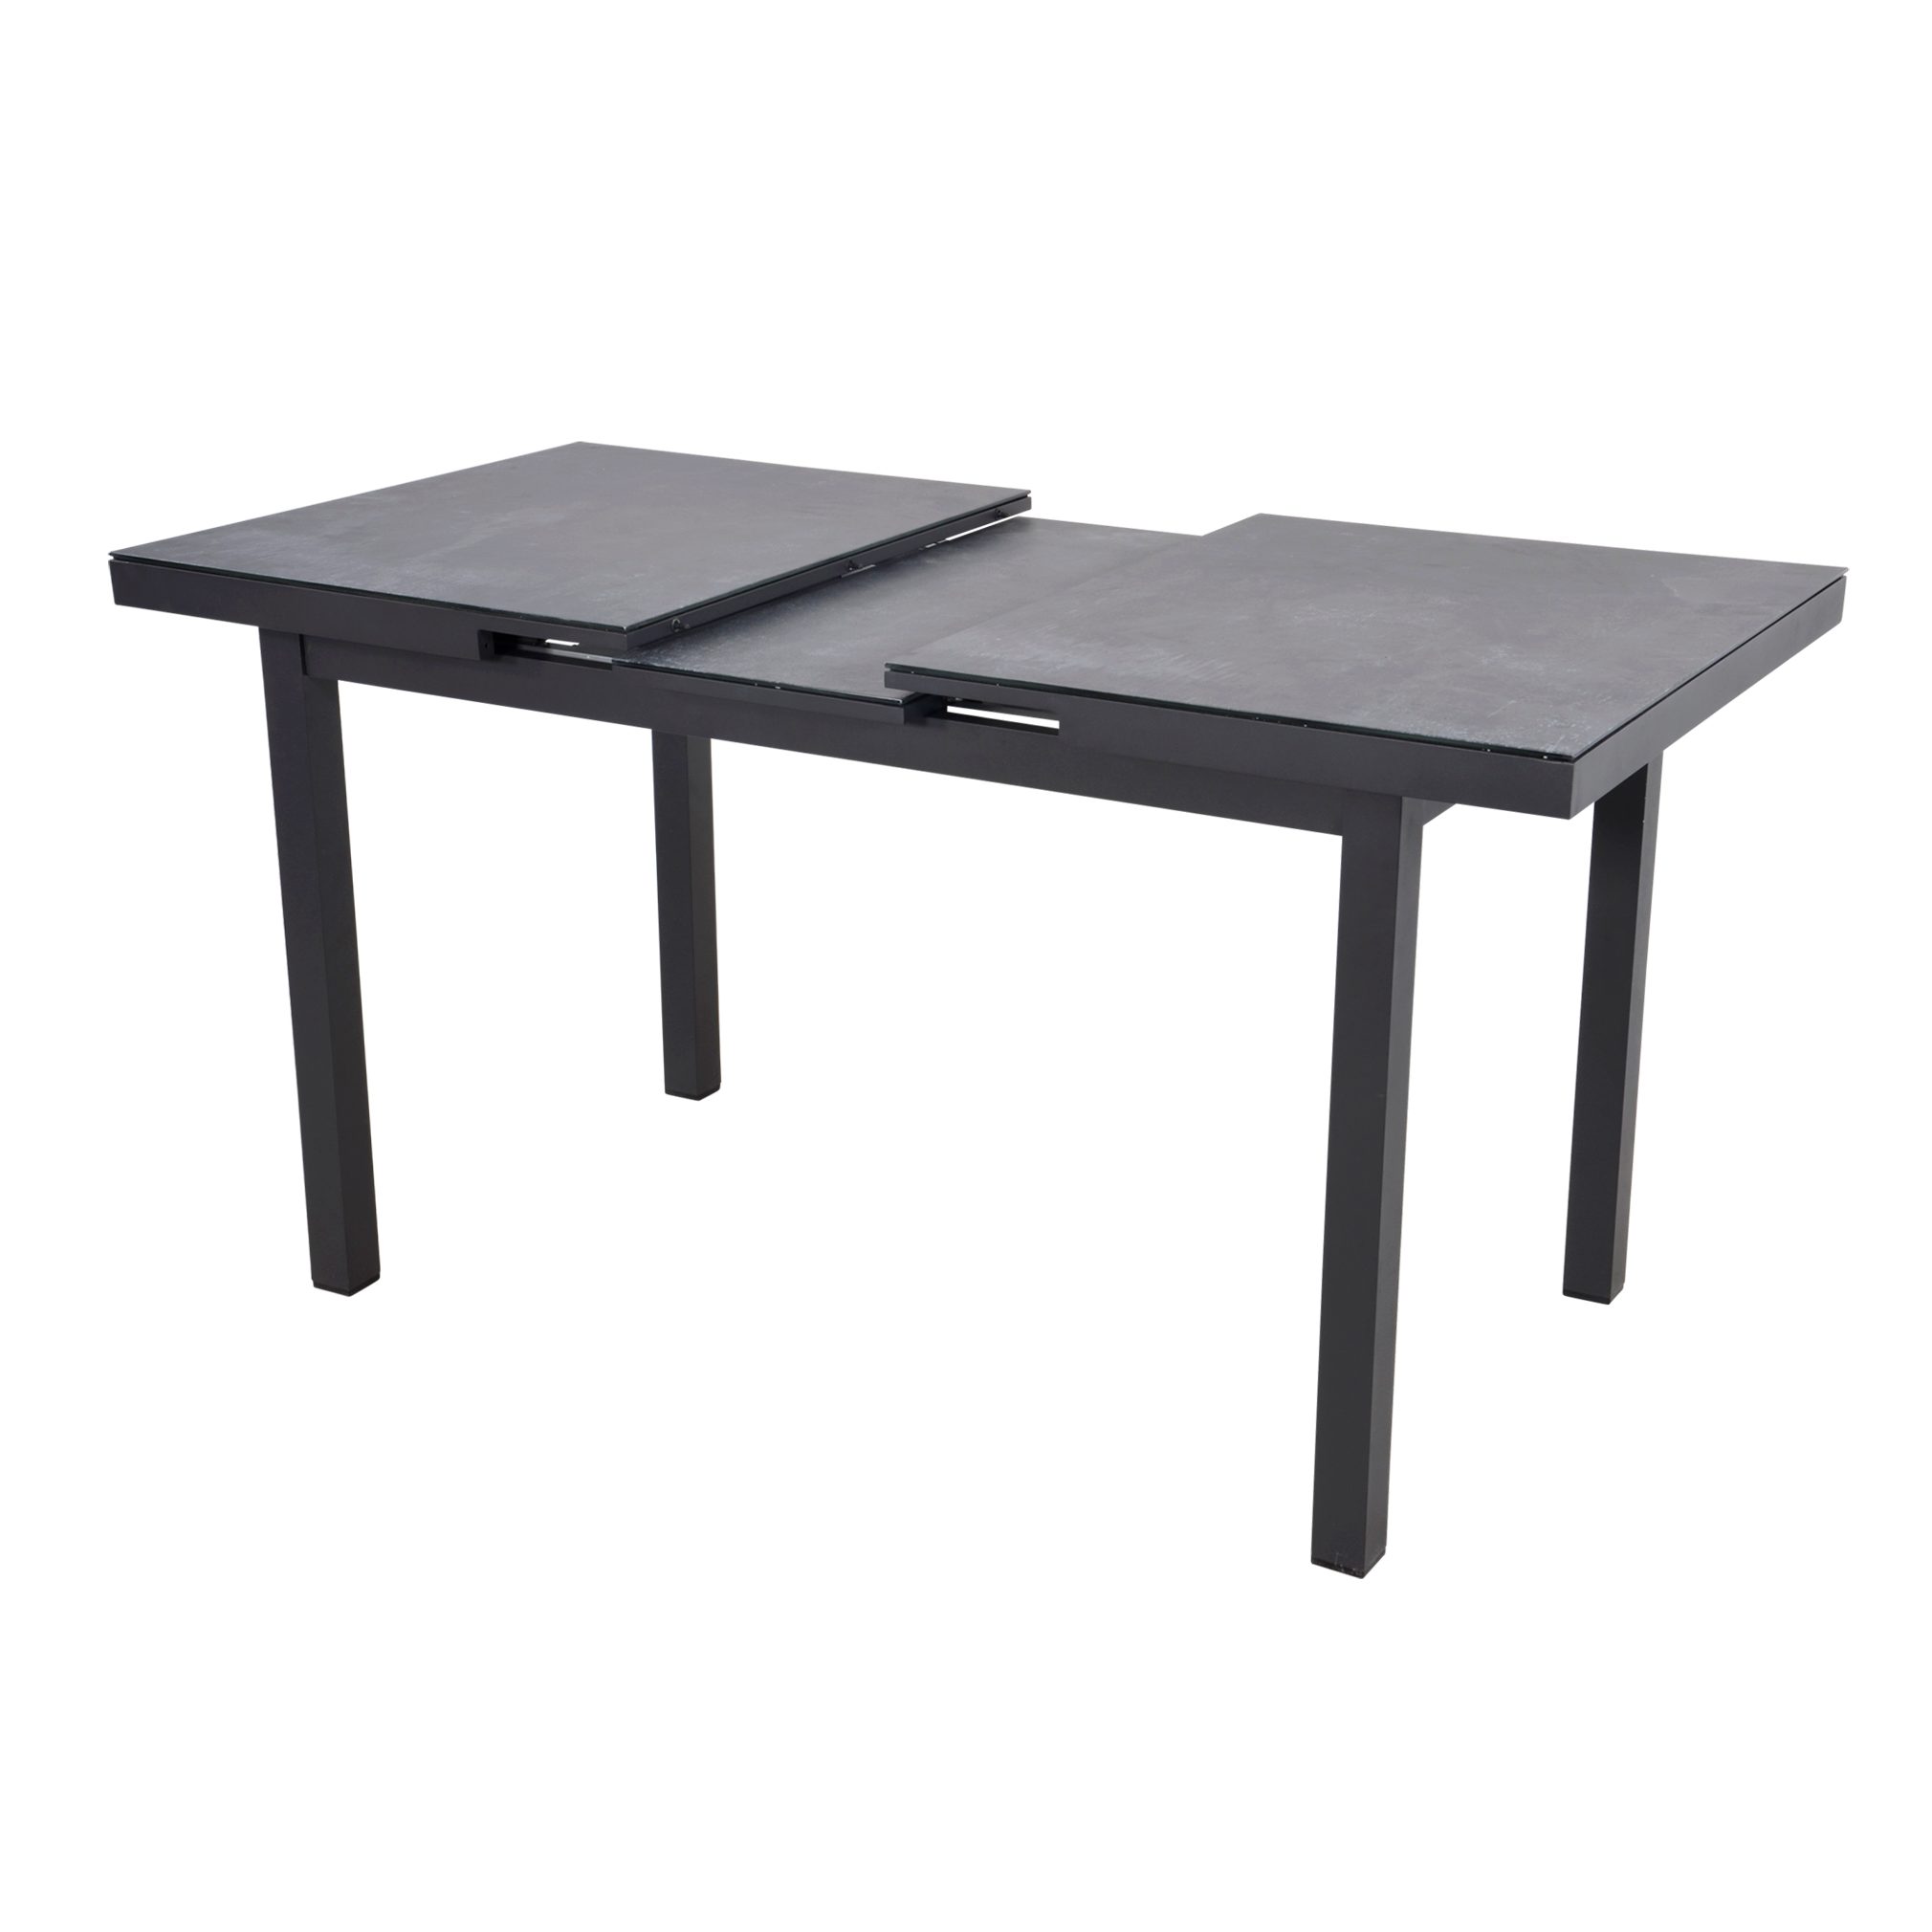 Lesli Living Gartentisch Gartentisch Tafel Tisch Balena Negro 130/160x75x76cm Keramik Glasplatte | Tische